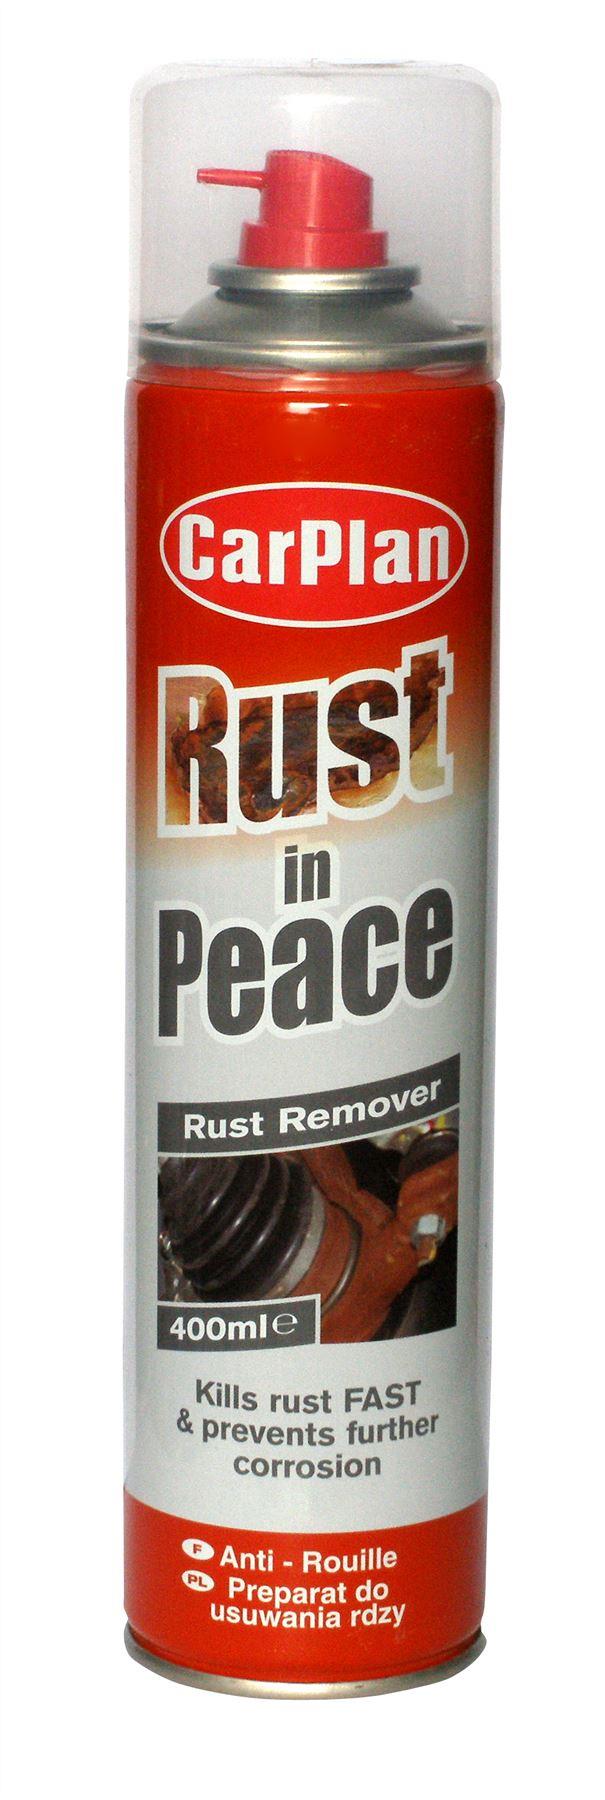 CarPlan Rust In Peace Rust Remover - 400ml